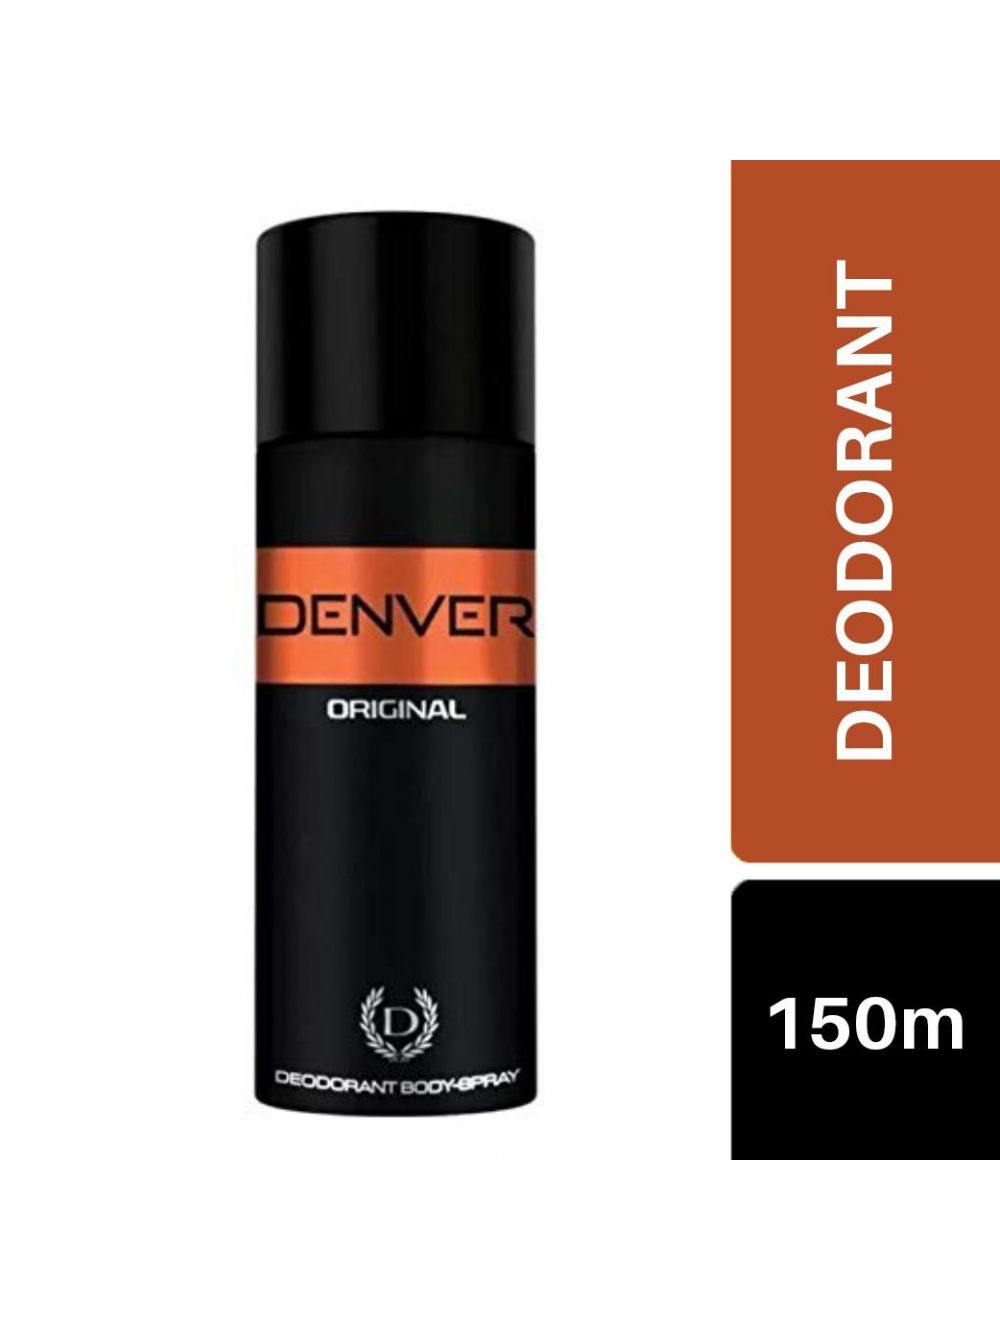 Denver Original Deodorant Body Spray (150ml) - Niram